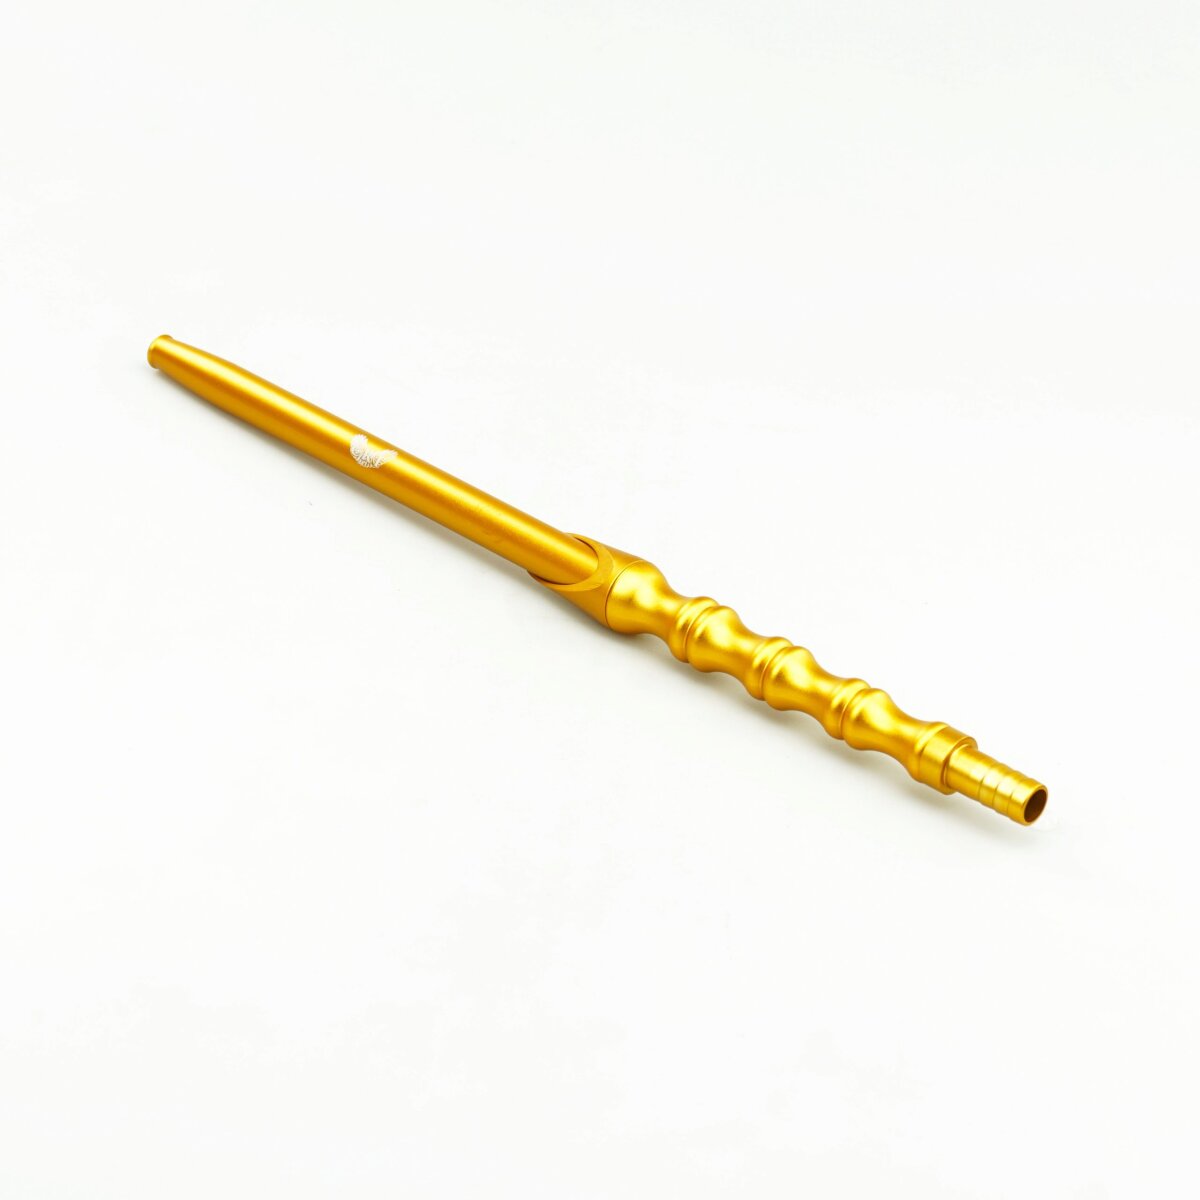 produkt-crt-alumundstueck-stick-2-0-gold-matt-